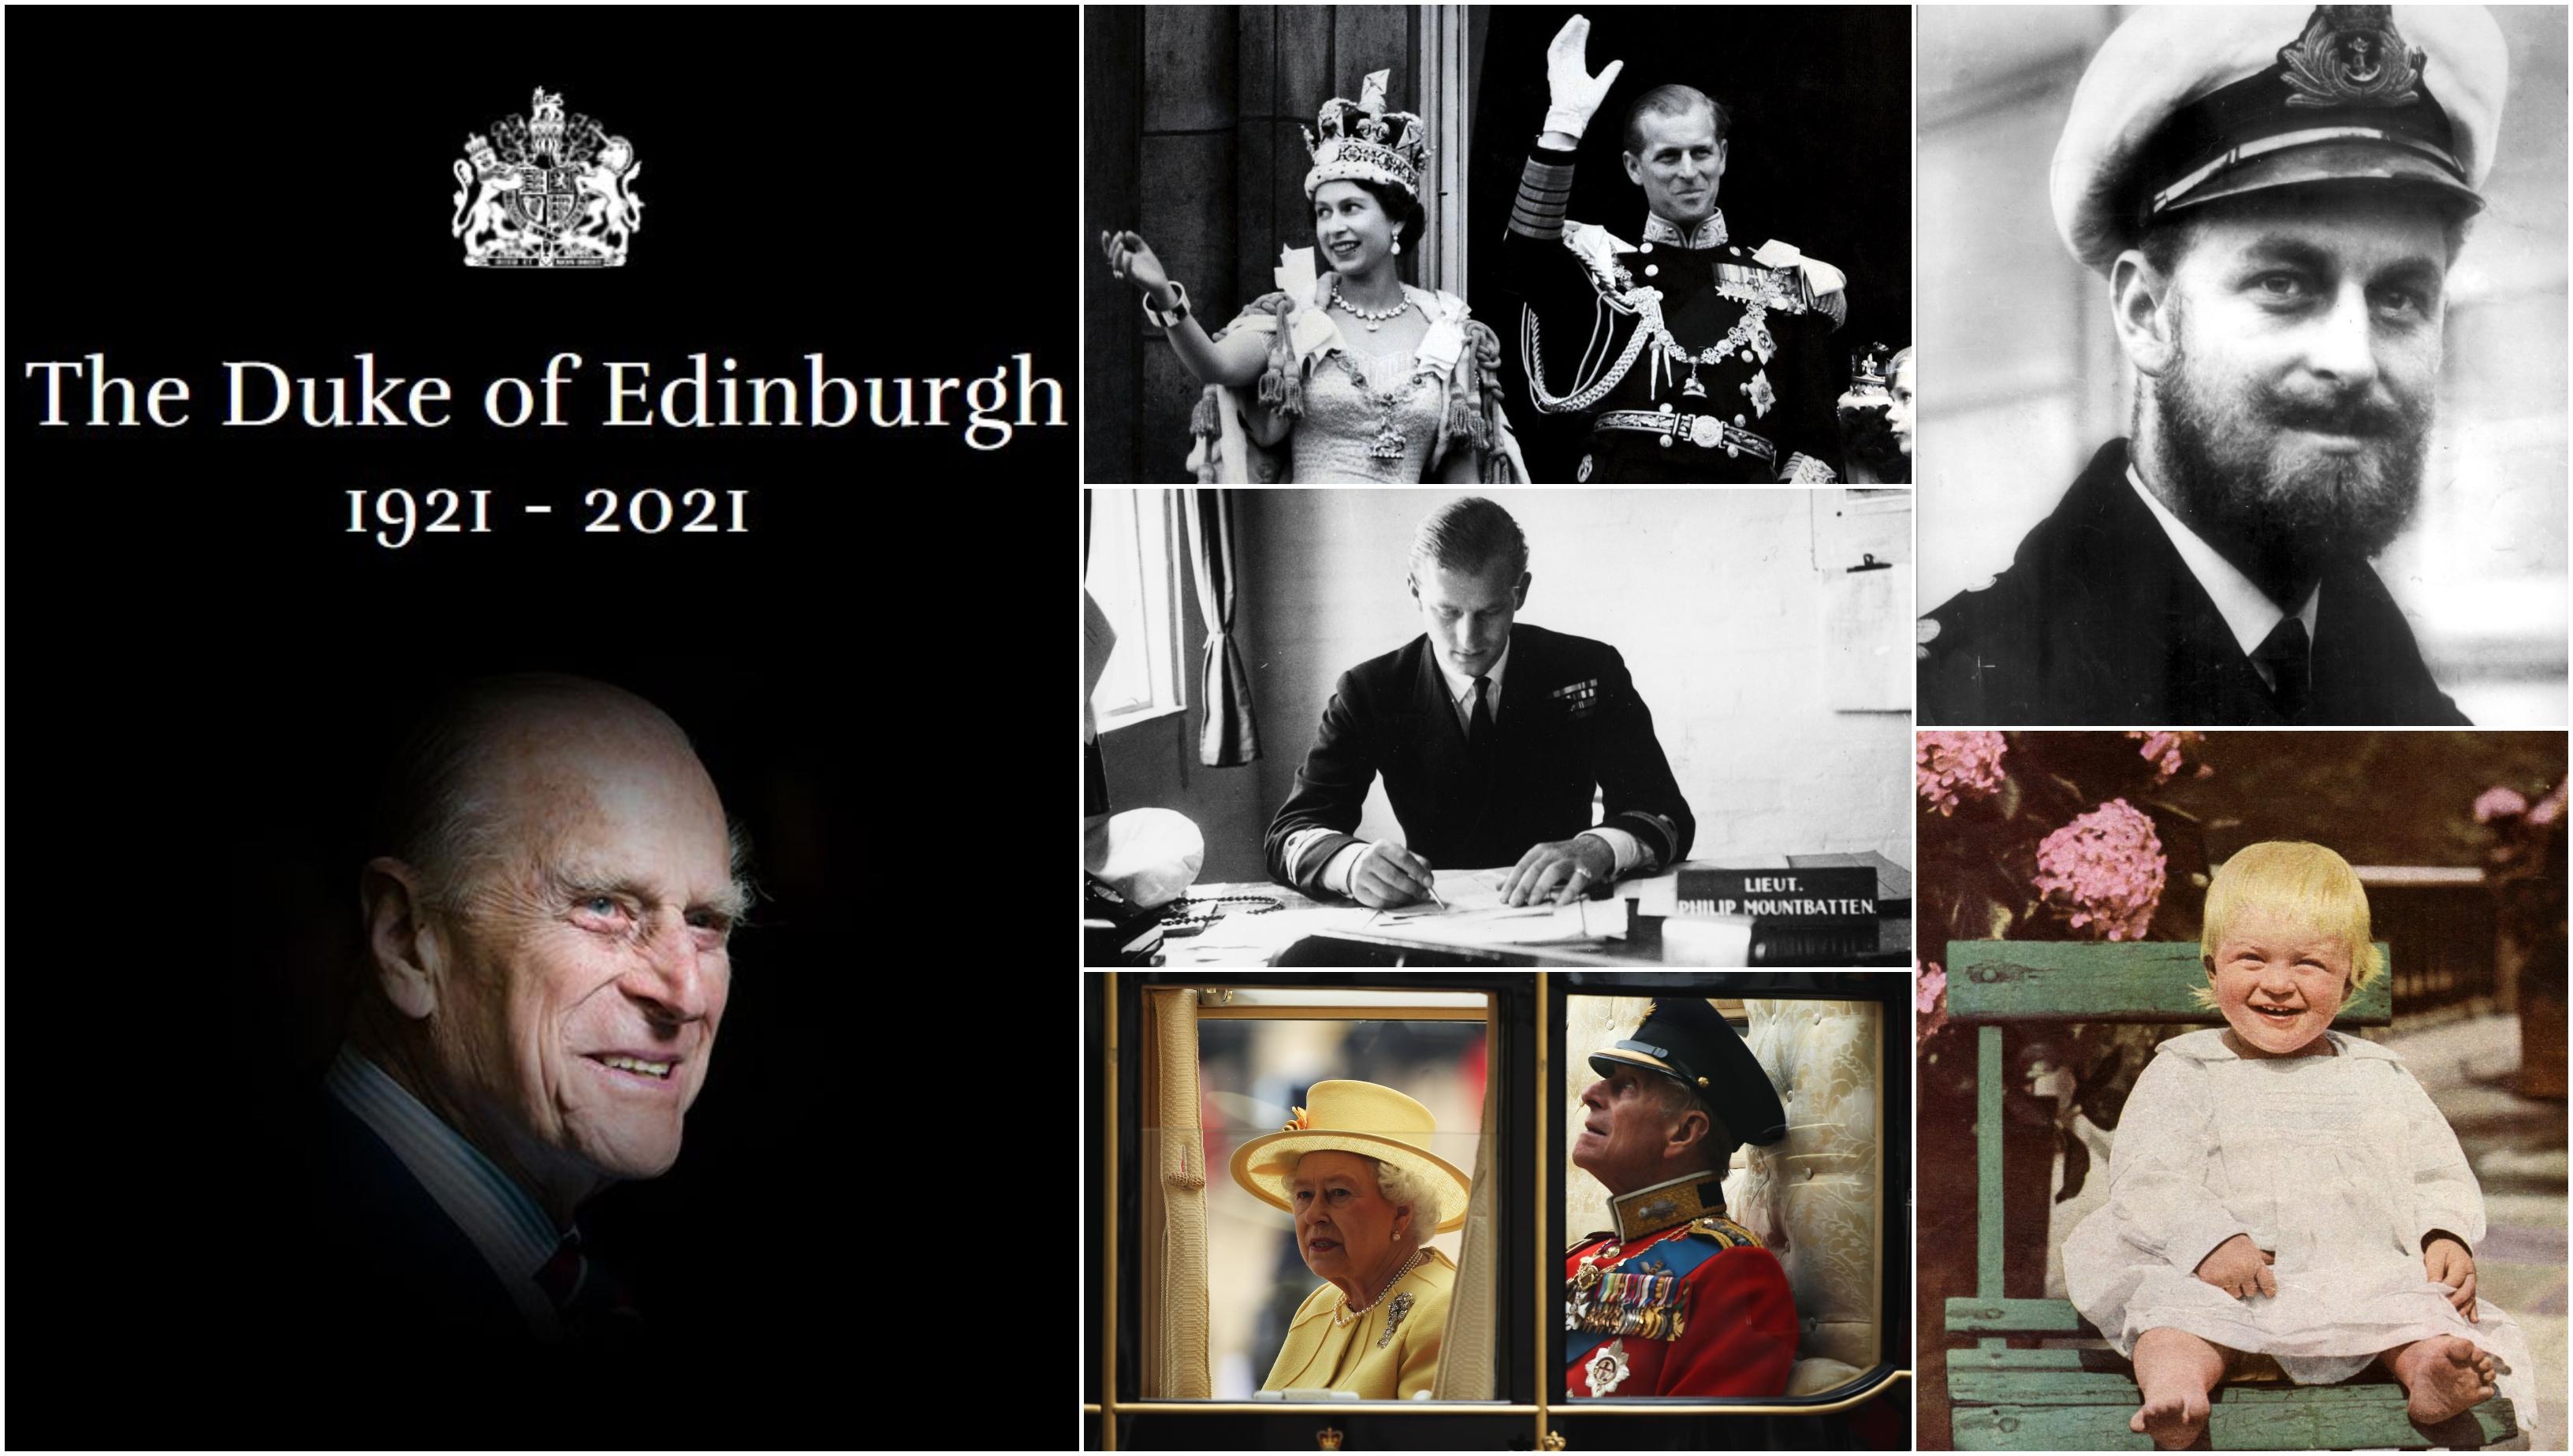 Colaj foto cu Prințul Philip, Duce de Edinburgh, cu momente din viața sa: copilărie, armata, nunta regală